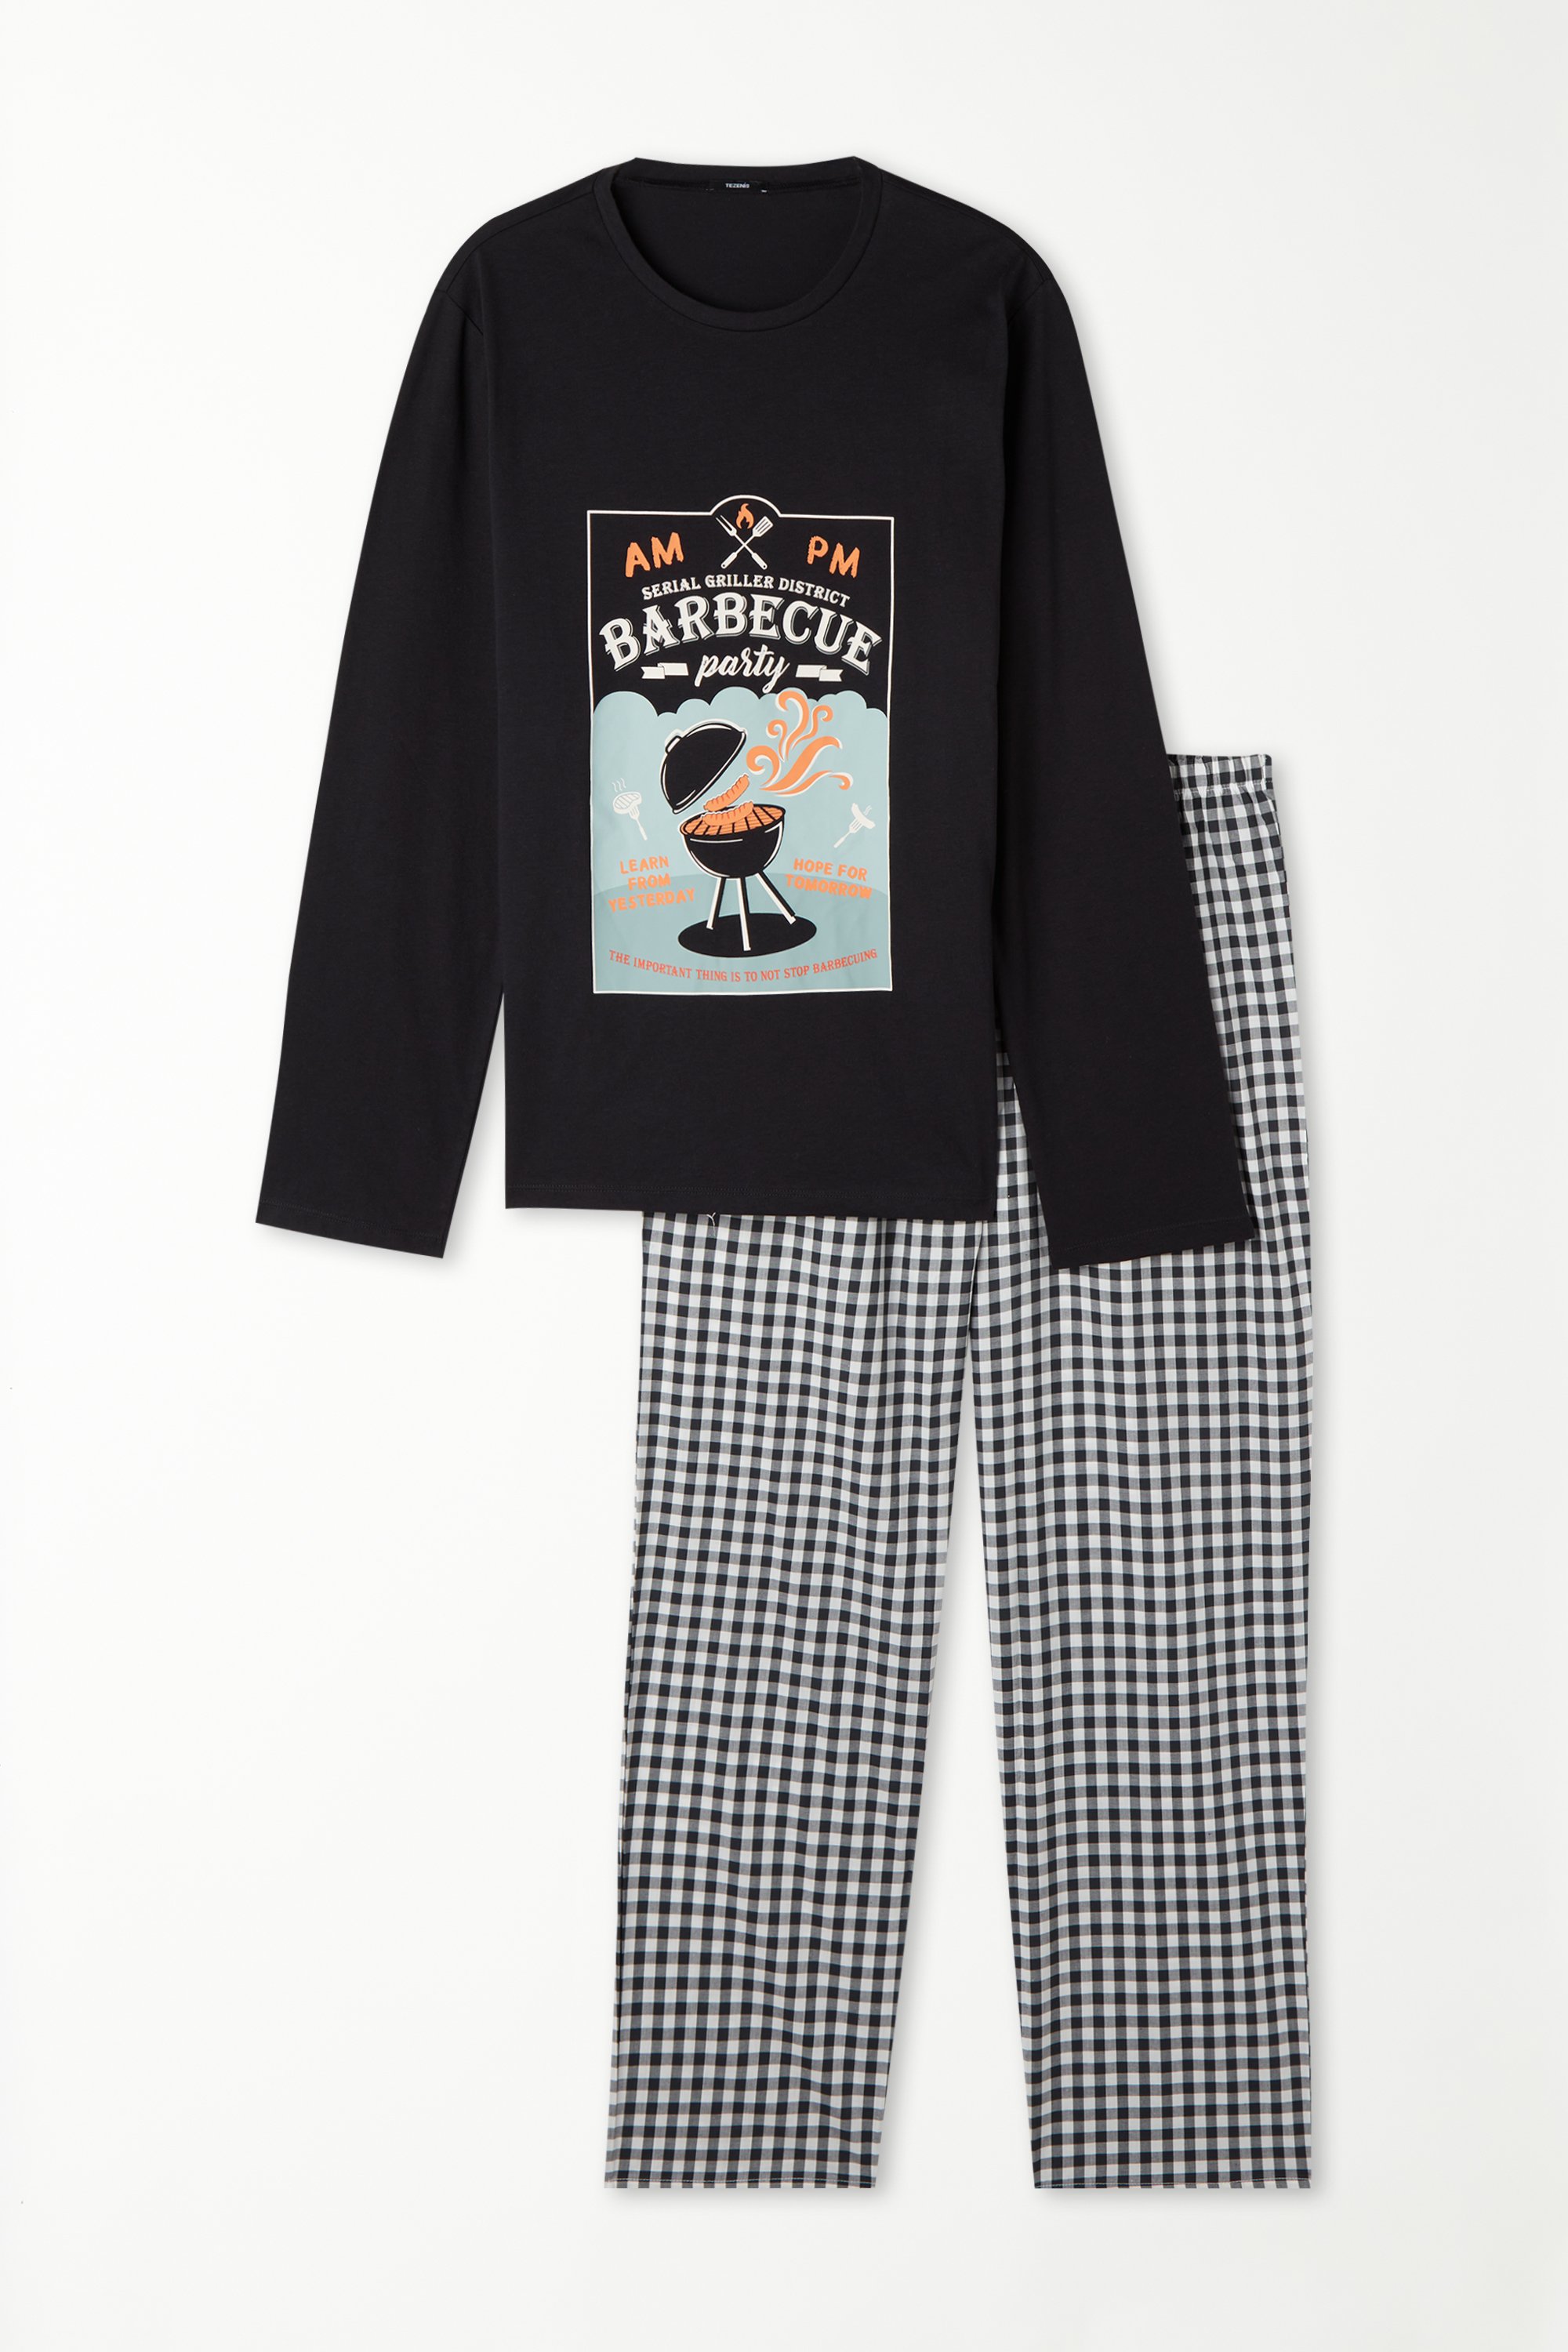 Langer Pyjama aus Baumwolle mit Barbecue-Print